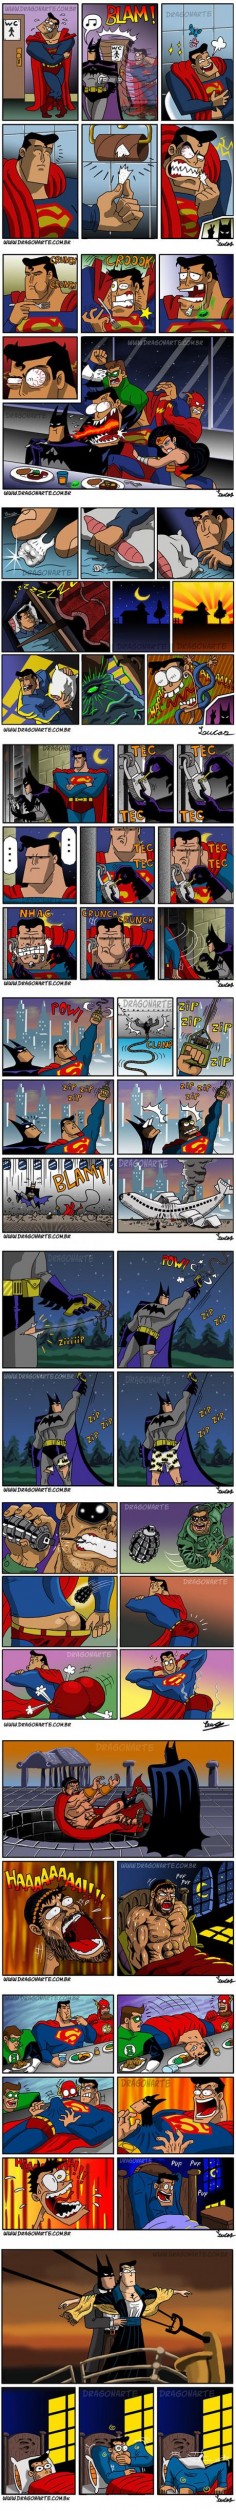 Bat Man & Super man